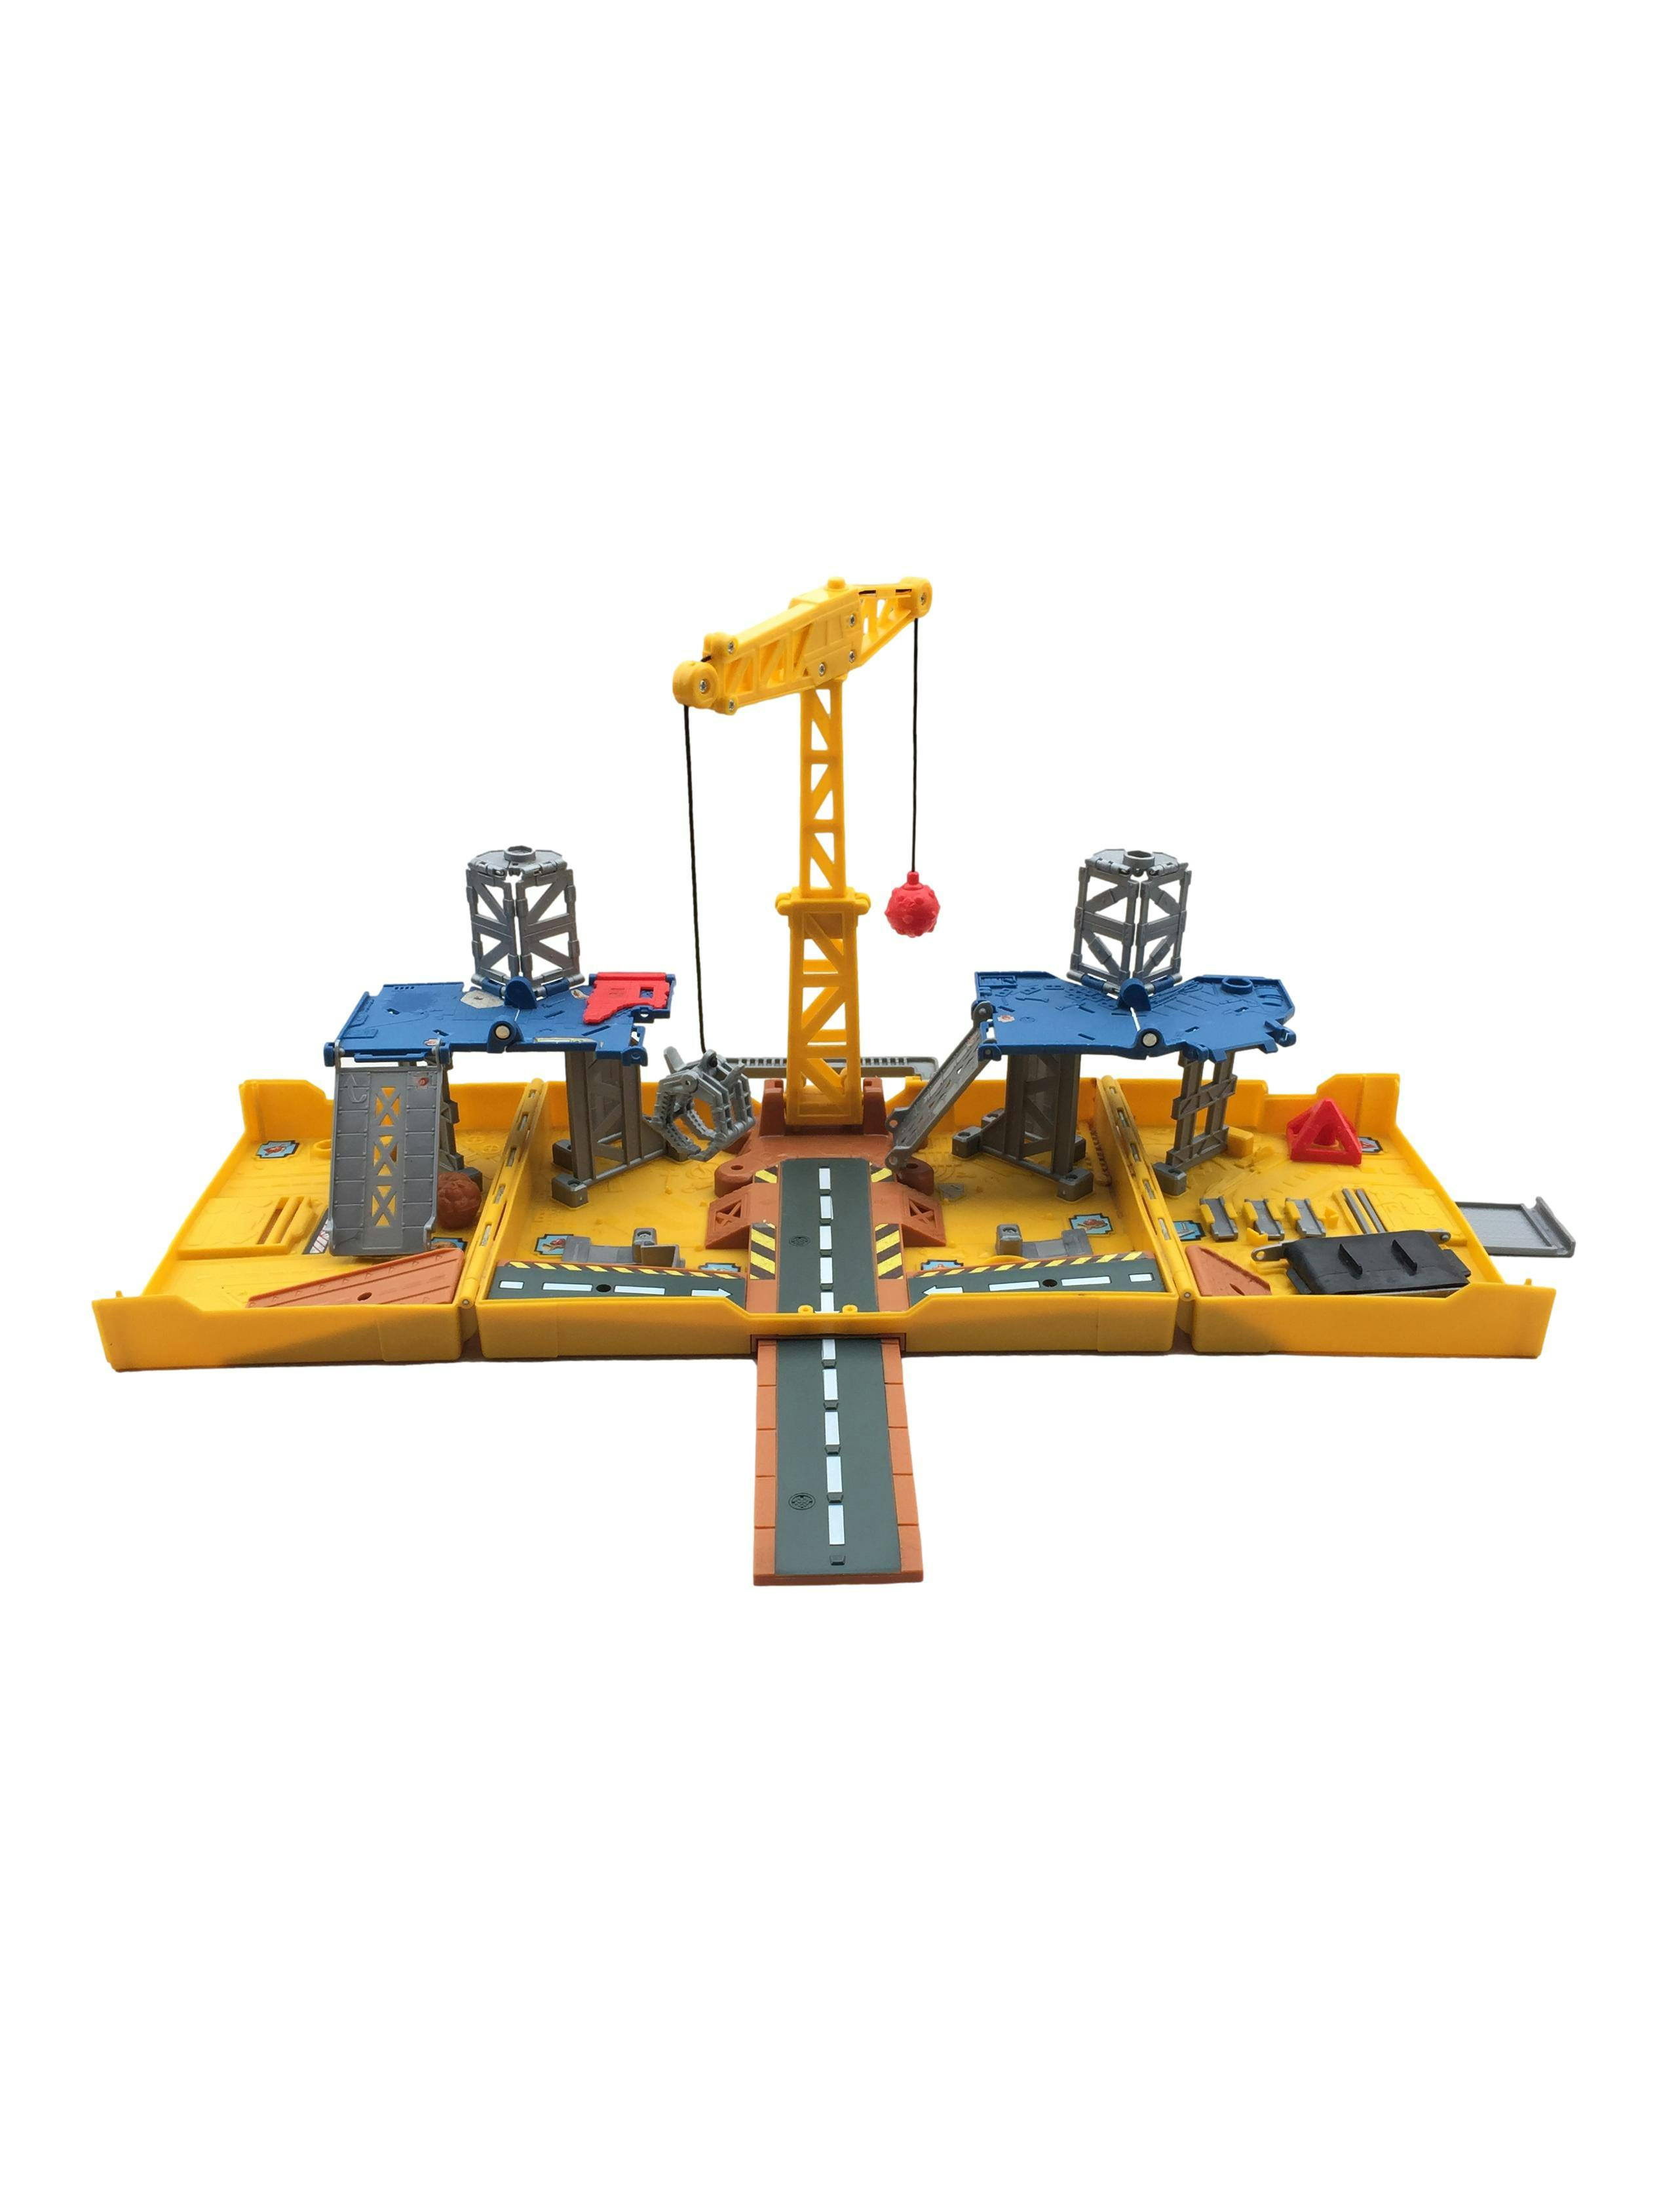 Matchbox. Set Plegable de Construcción. Incluye una grúa giratoria y dos pistas extendibles. 